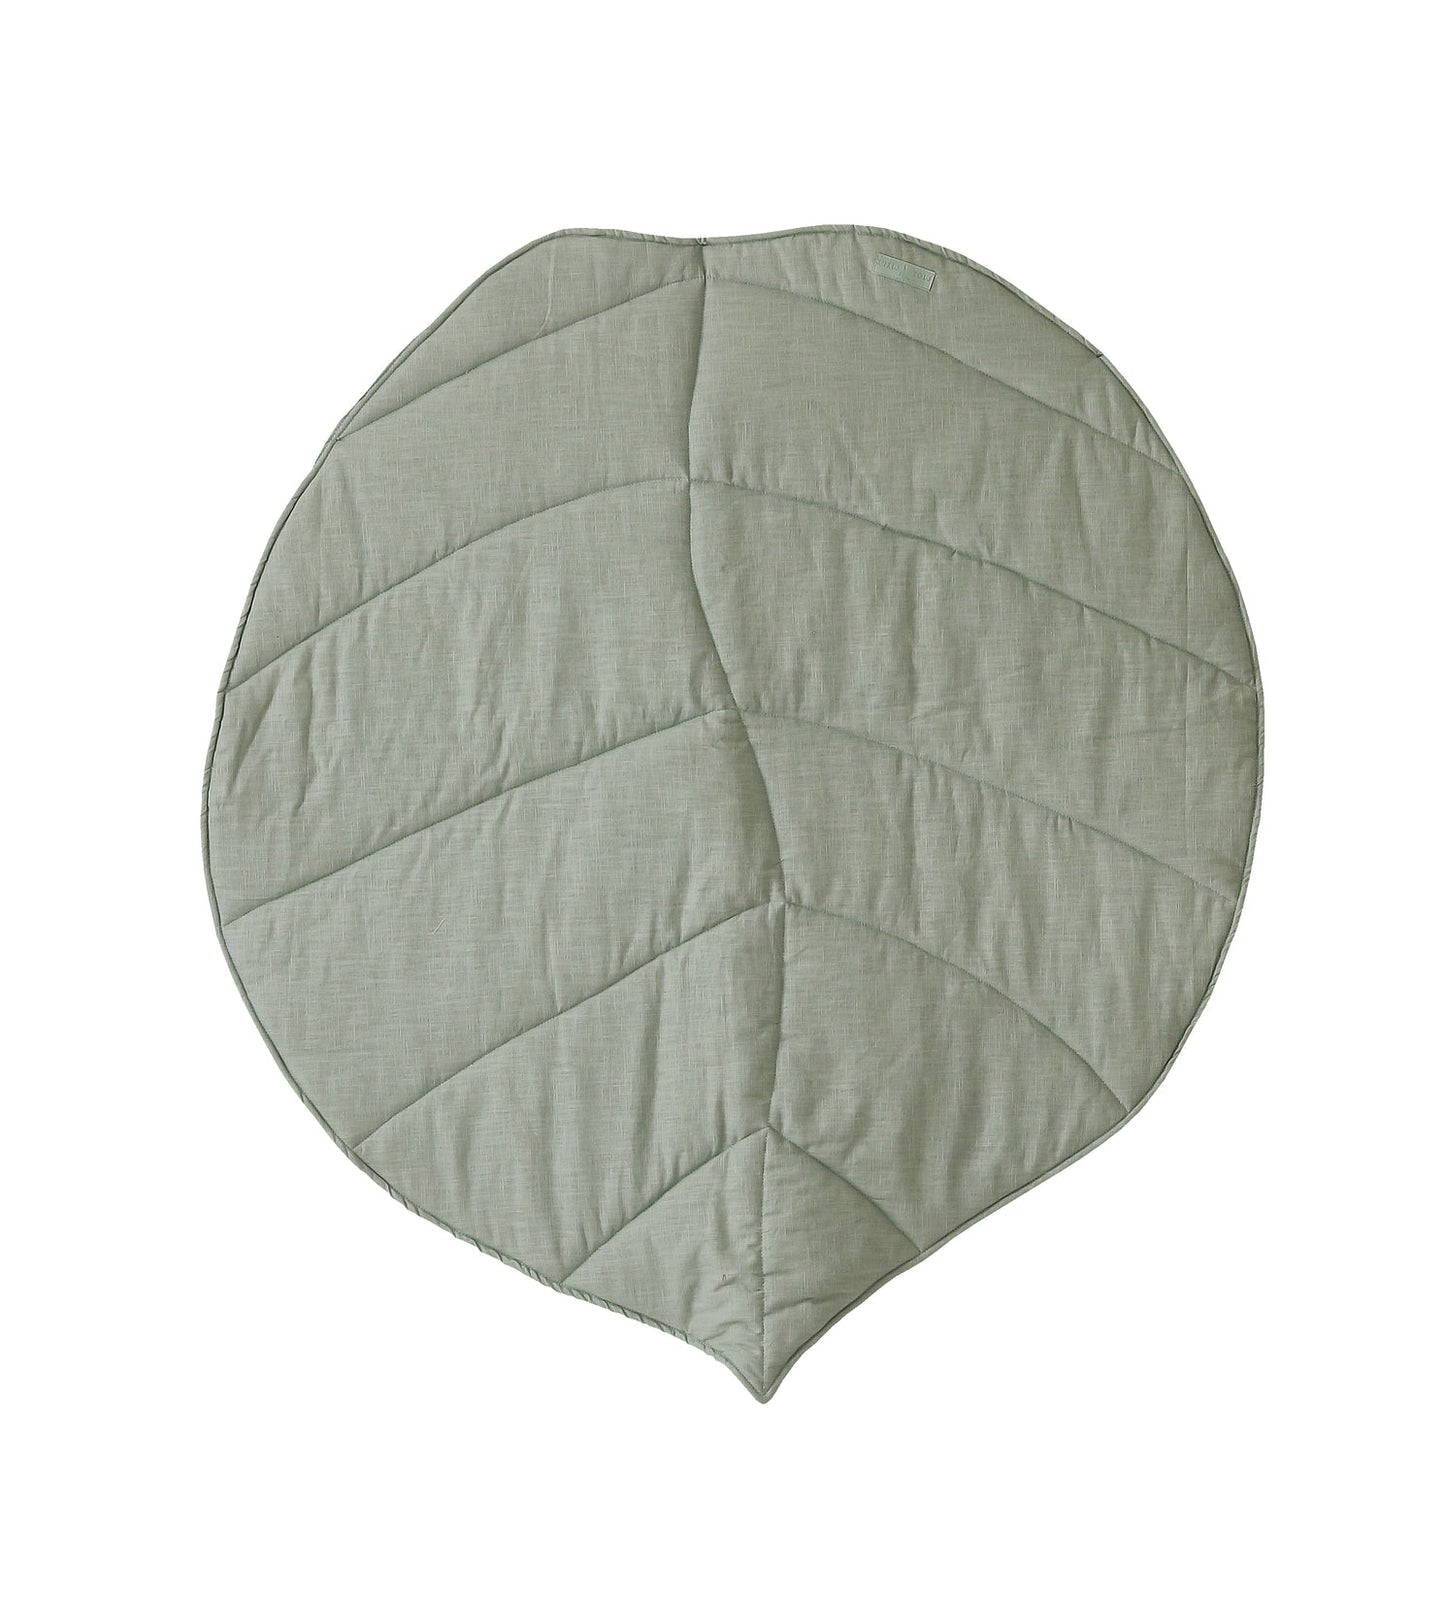 Linen “Mint” Leaf Mat